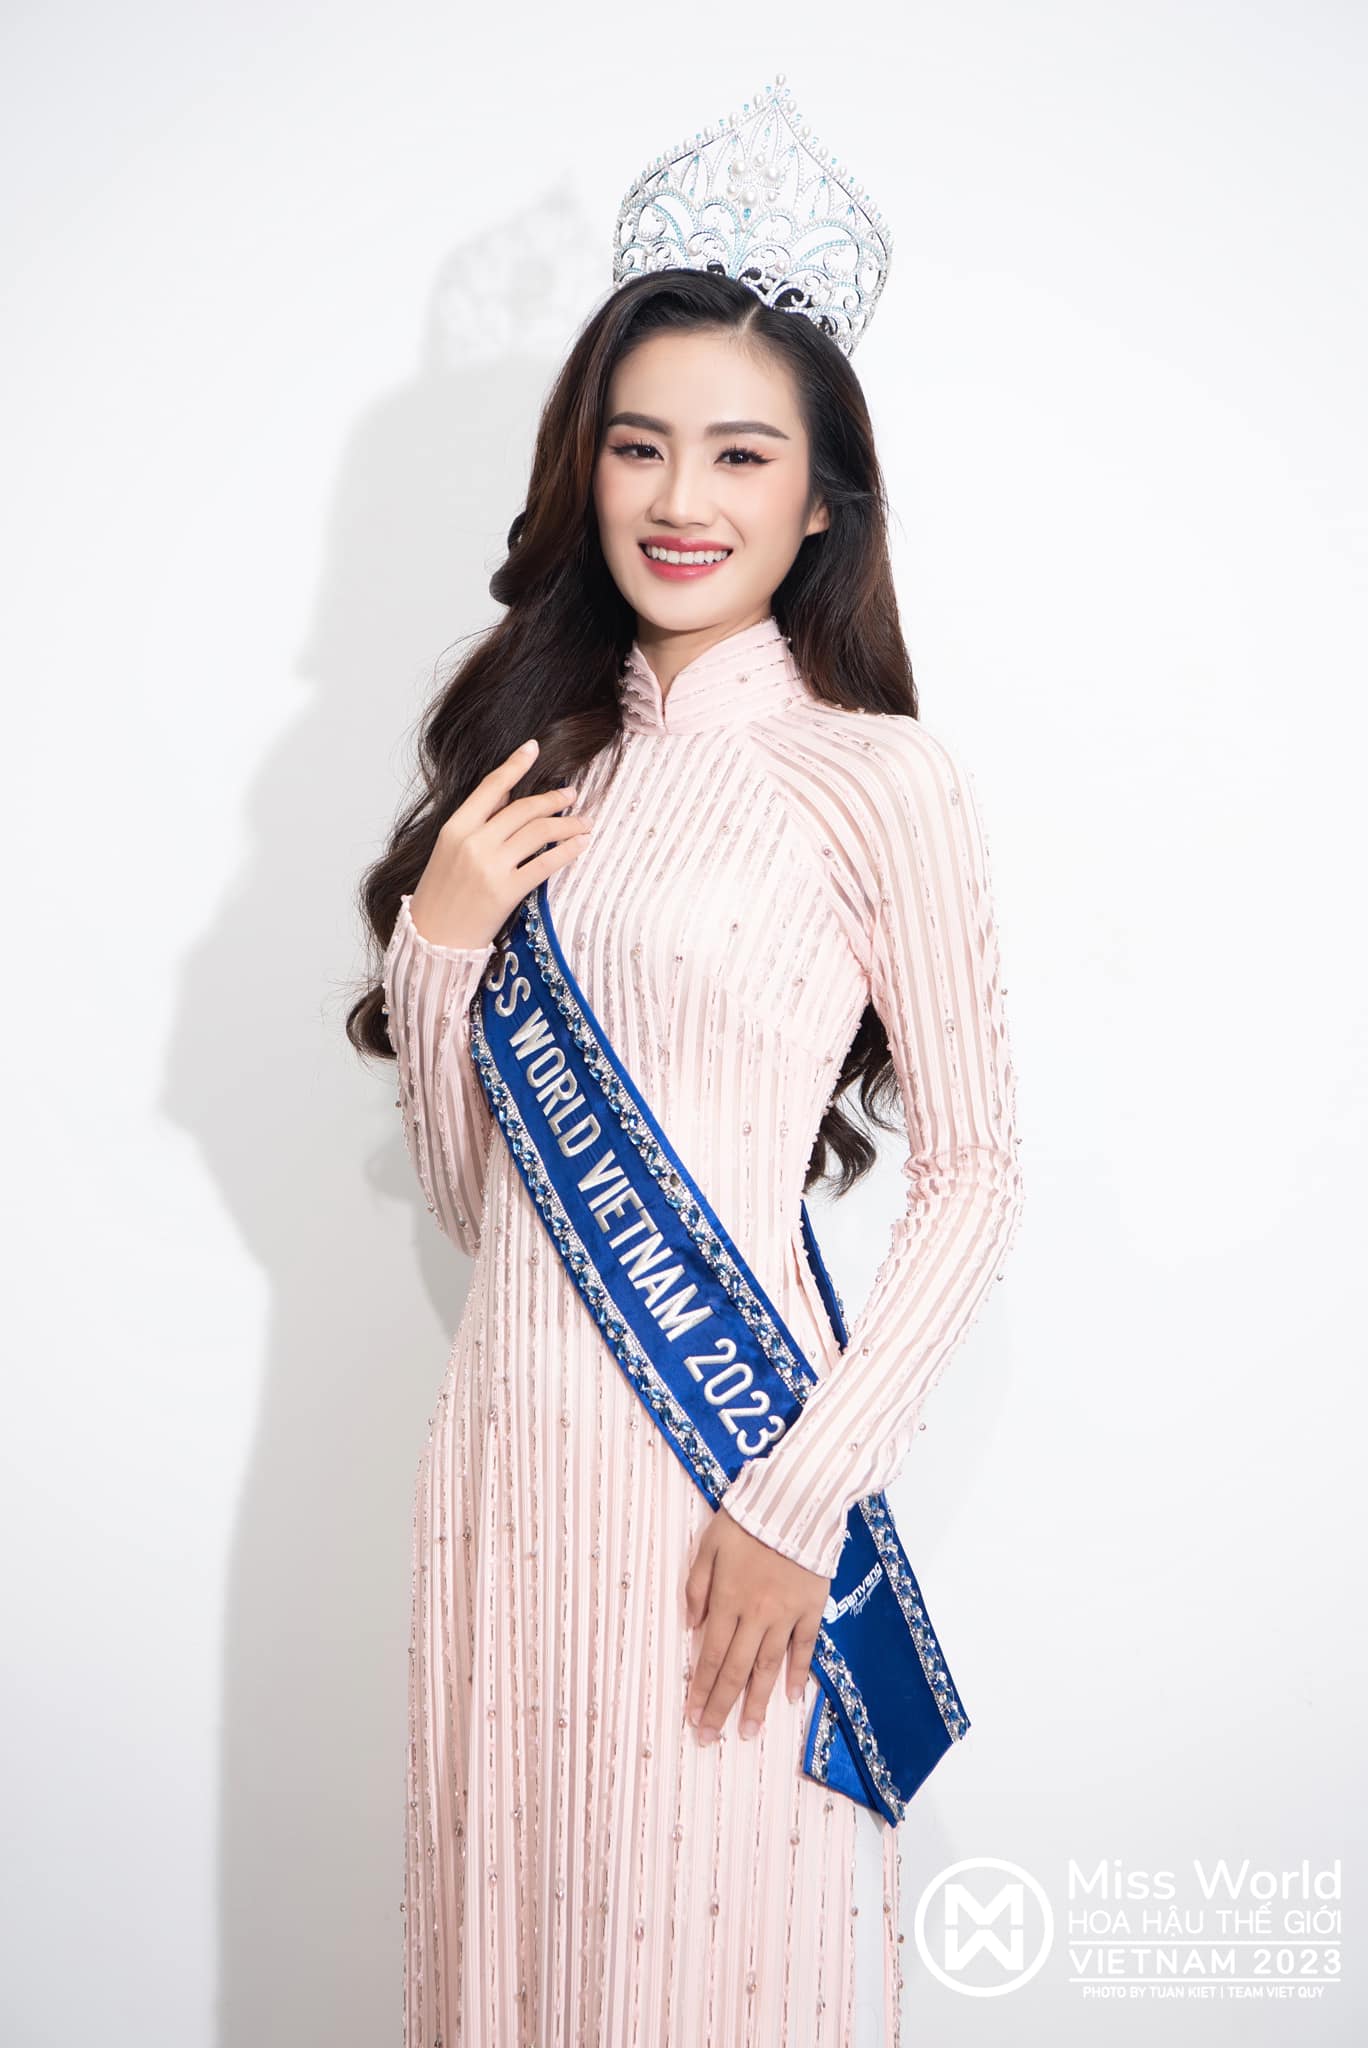 2 màn trả lời báo chí 'gây bão' của sao Việt: Hoàng Thùy Linh 'trịch thượng', Hoa hậu Ý Nhi vụng về hút 'antifan' - ảnh 2